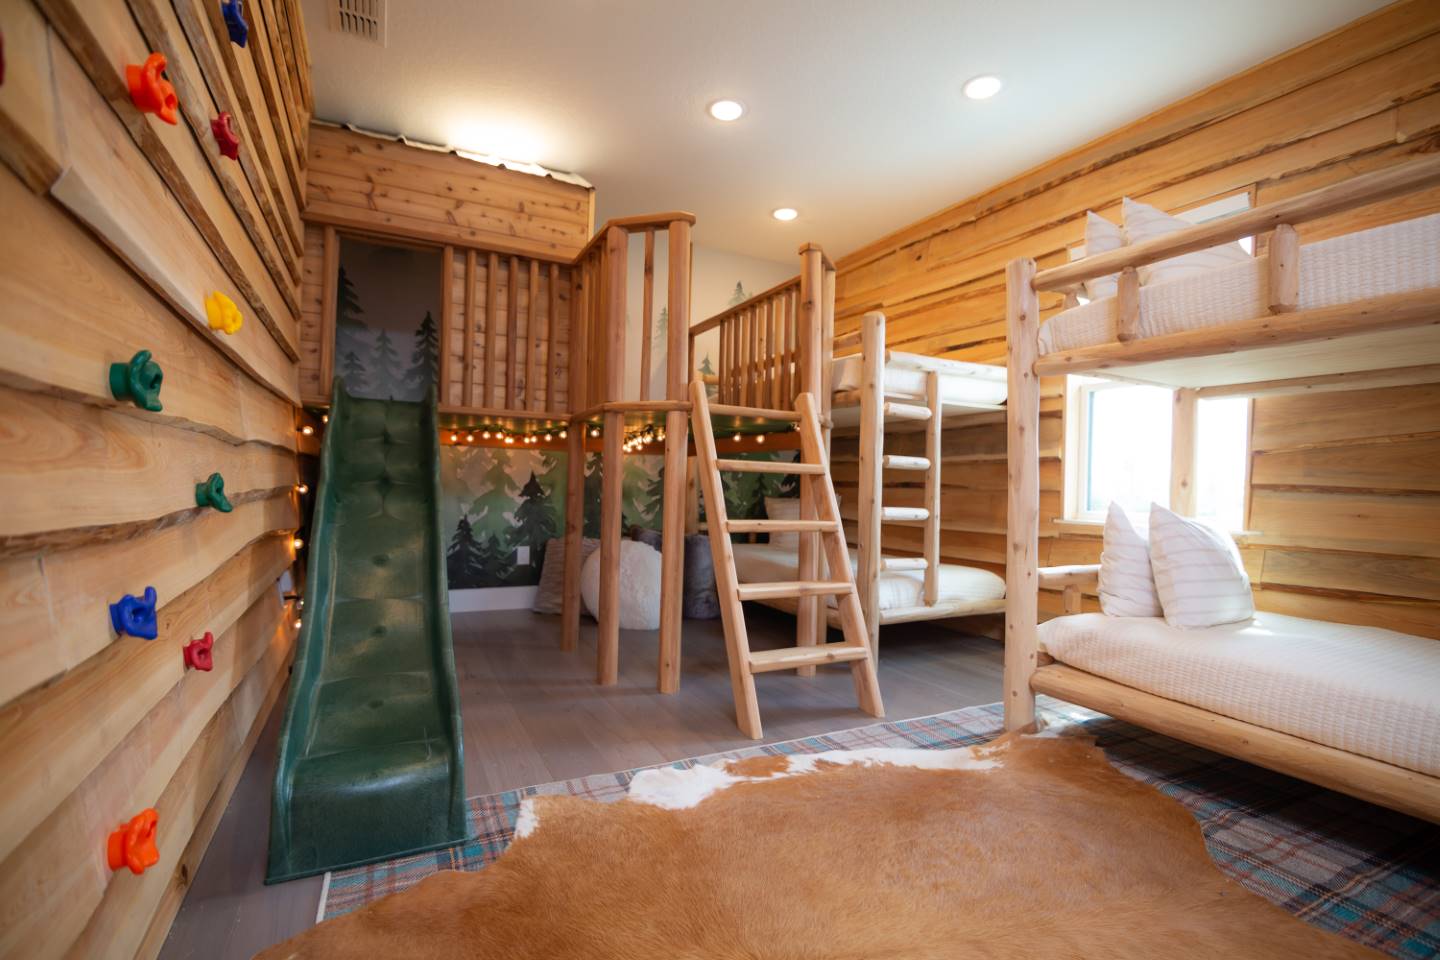 [amenities:bunk-bed-room:2] Bunk Bed Room